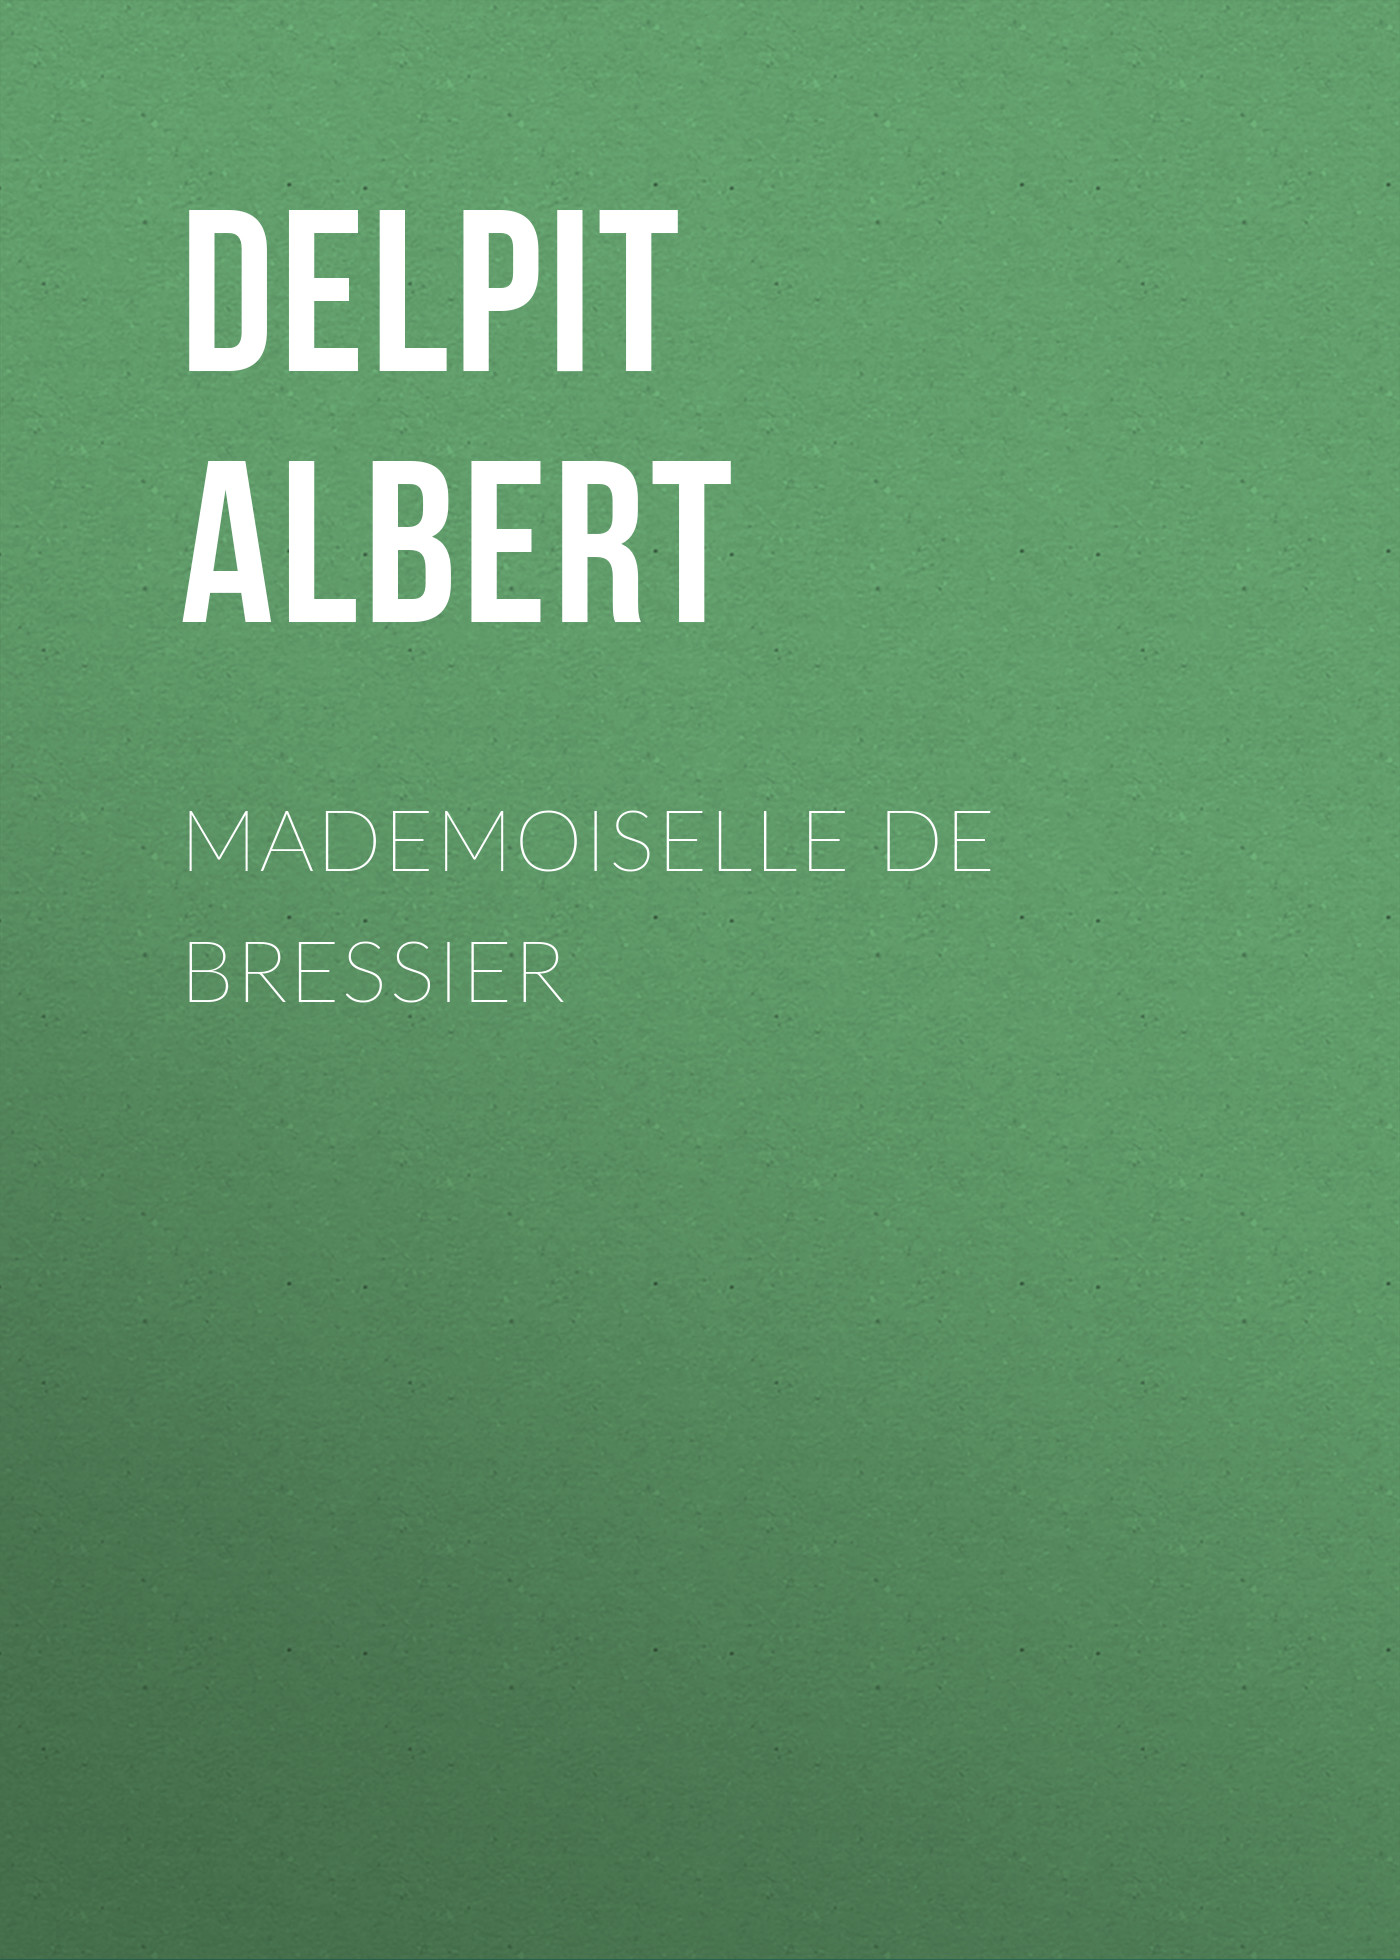 Книга Mademoiselle de Bressier из серии , созданная Albert Delpit, может относится к жанру Литература 19 века, Зарубежная старинная литература, Зарубежная классика. Стоимость электронной книги Mademoiselle de Bressier с идентификатором 24548036 составляет 0 руб.